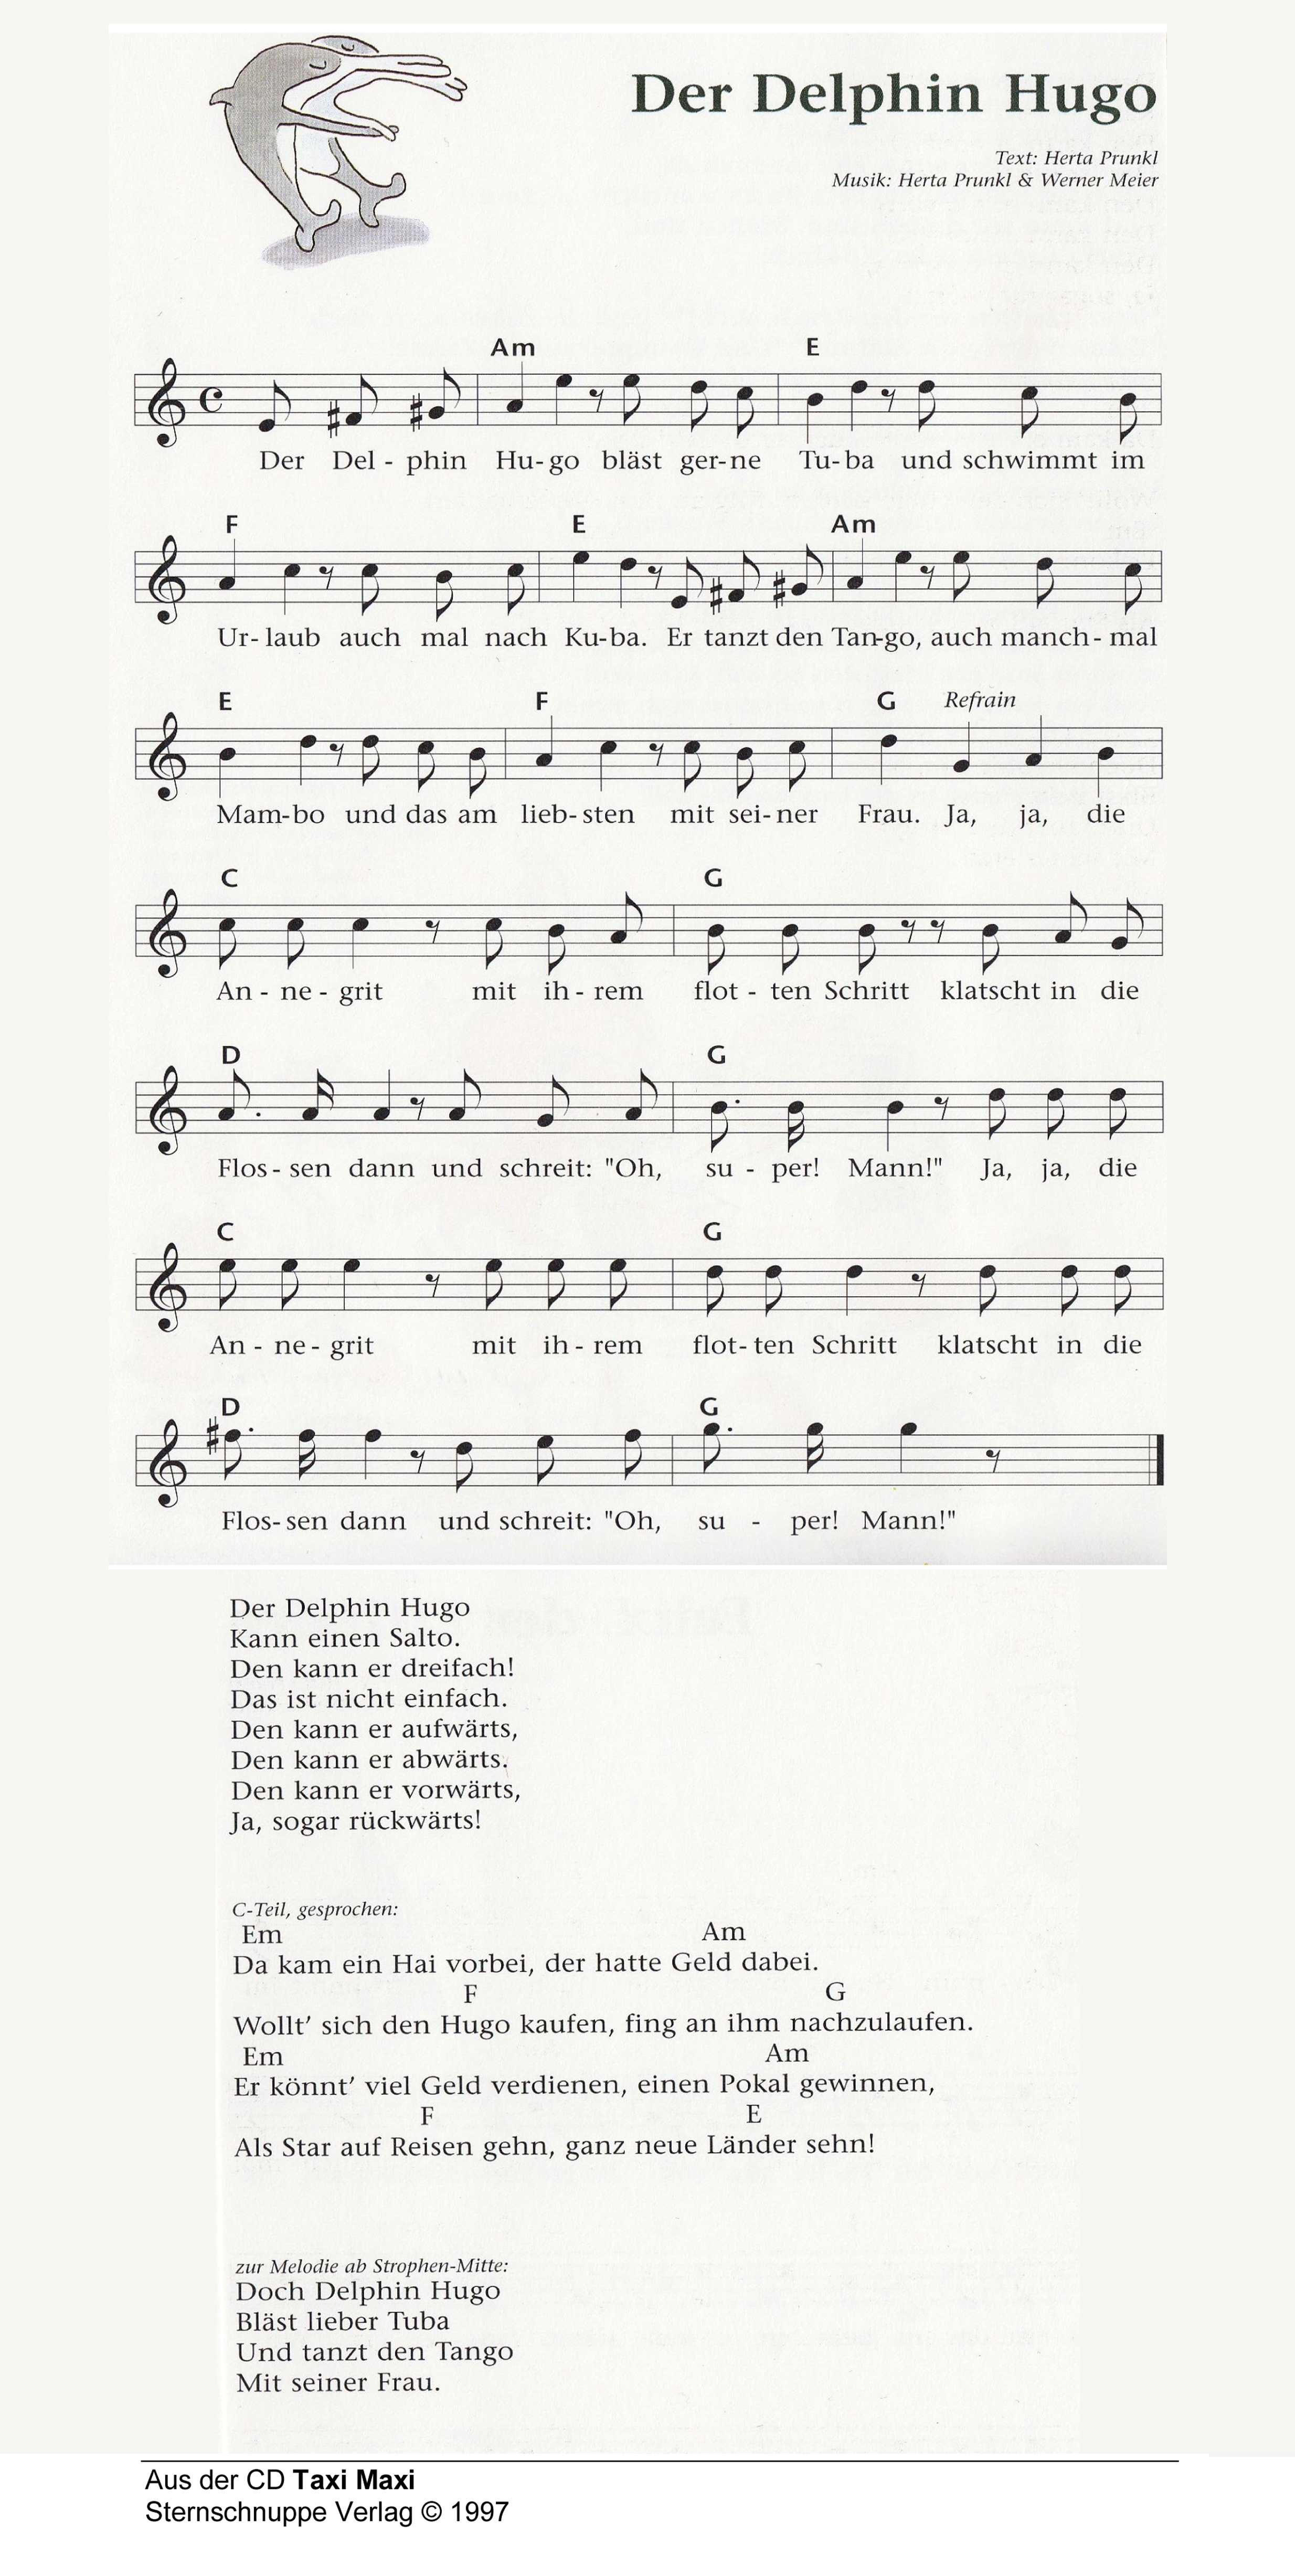 Liedtext, Akkorde und Noten vom Kinderlied Der Delfin Hugo